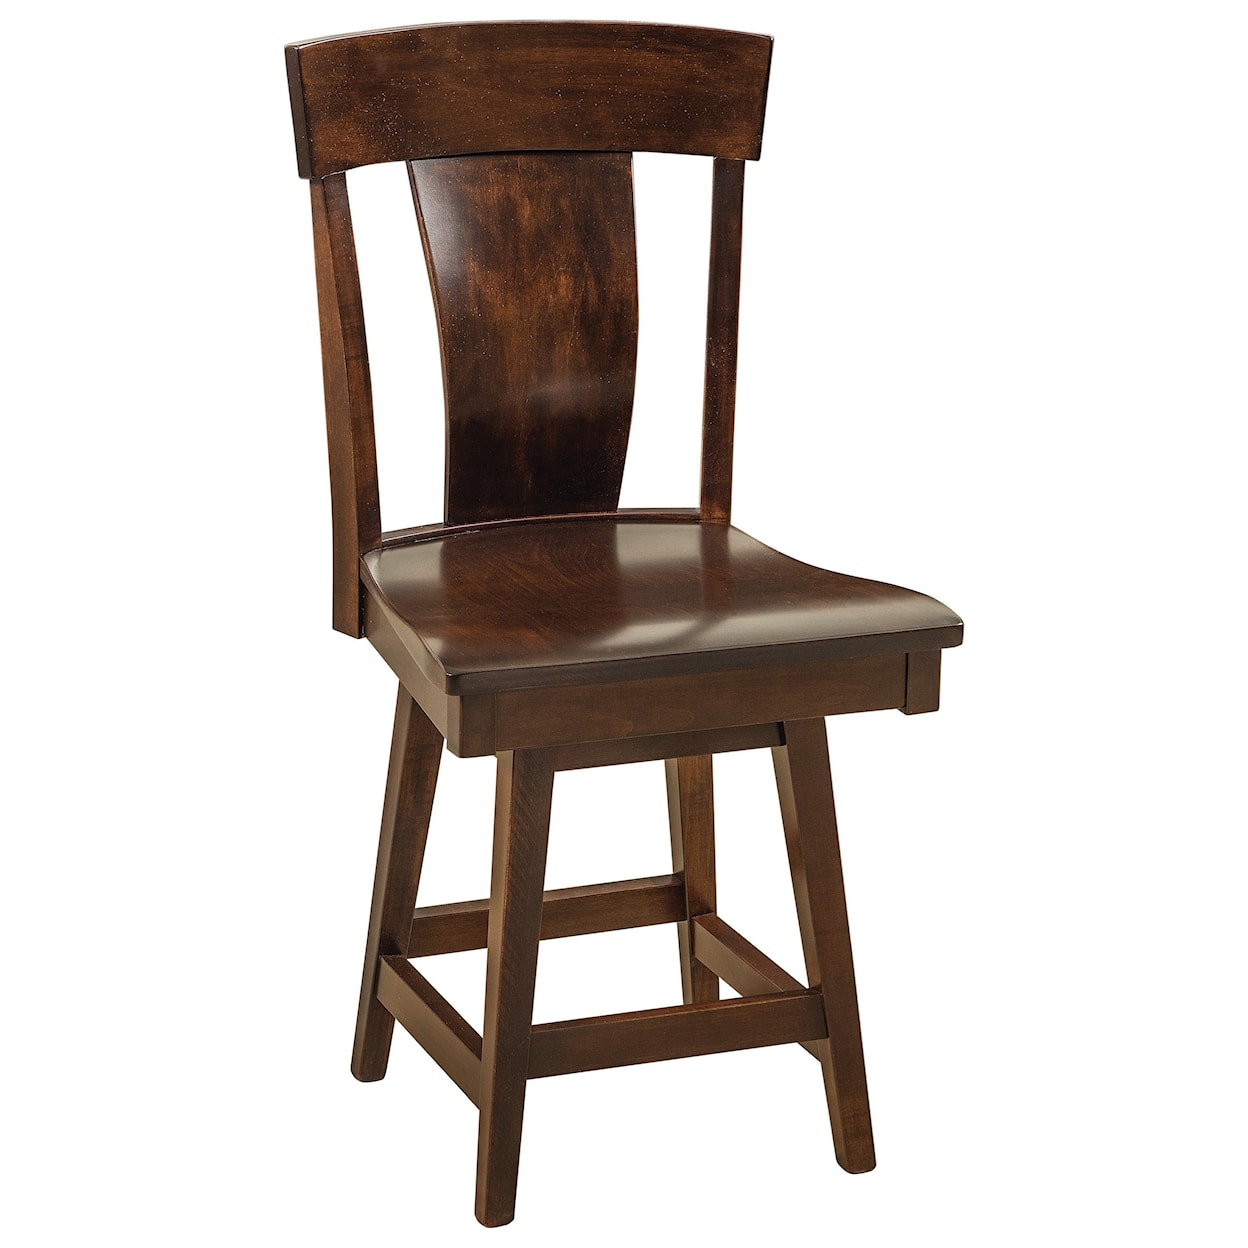 F&N Woodworking Baldwin Swivel Counter Height Stool - Fabric Seat